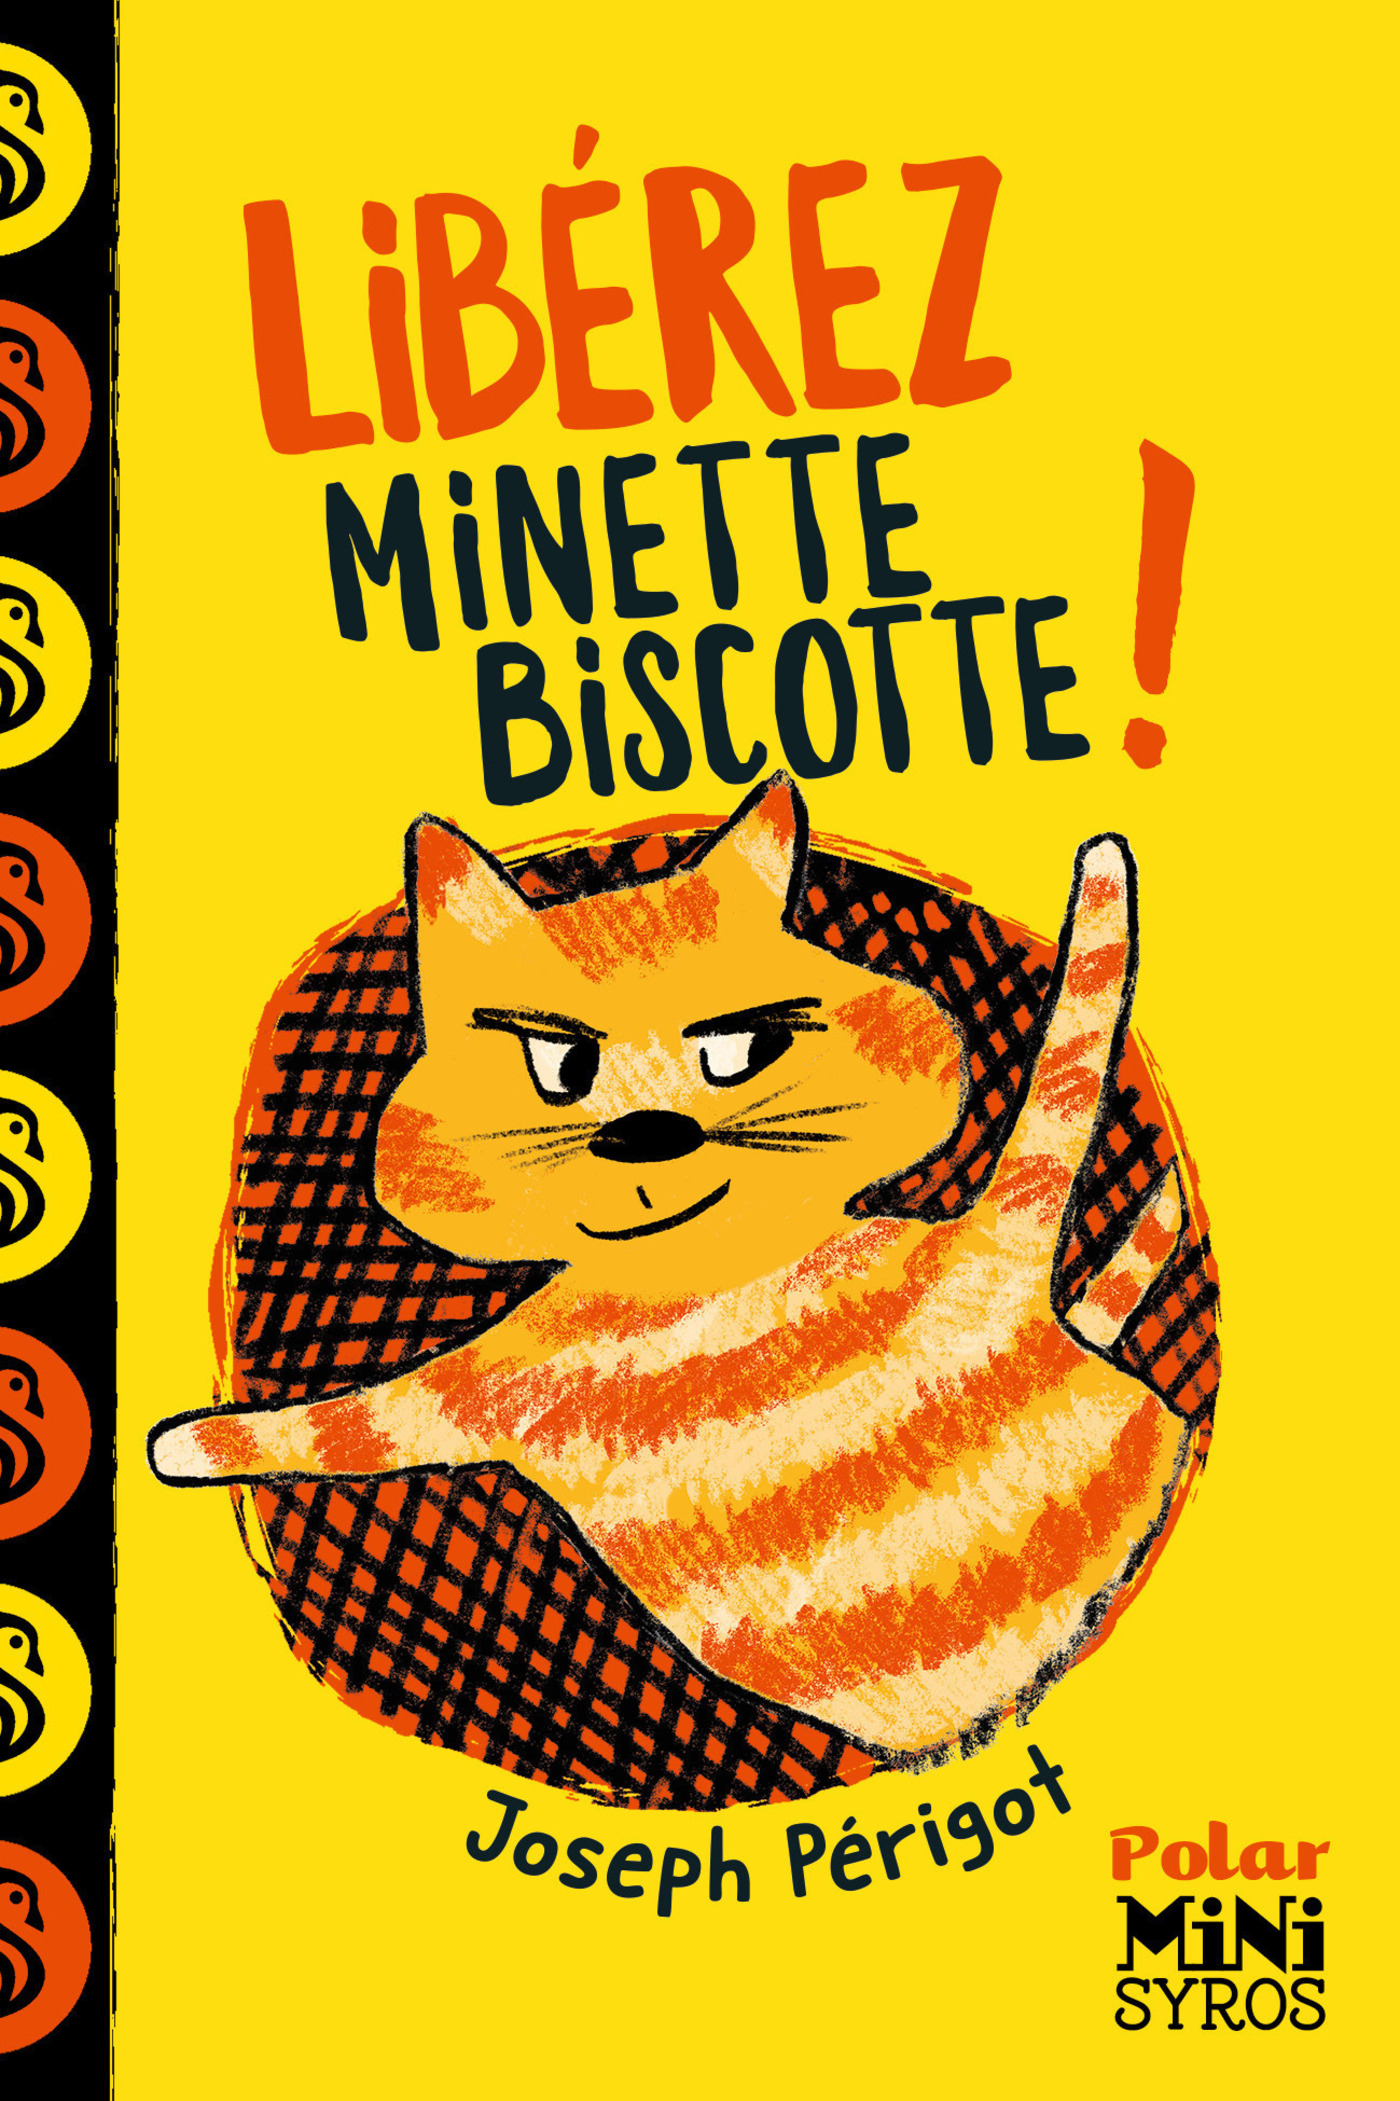 Afficher "Libérez Minette-Biscotte !"